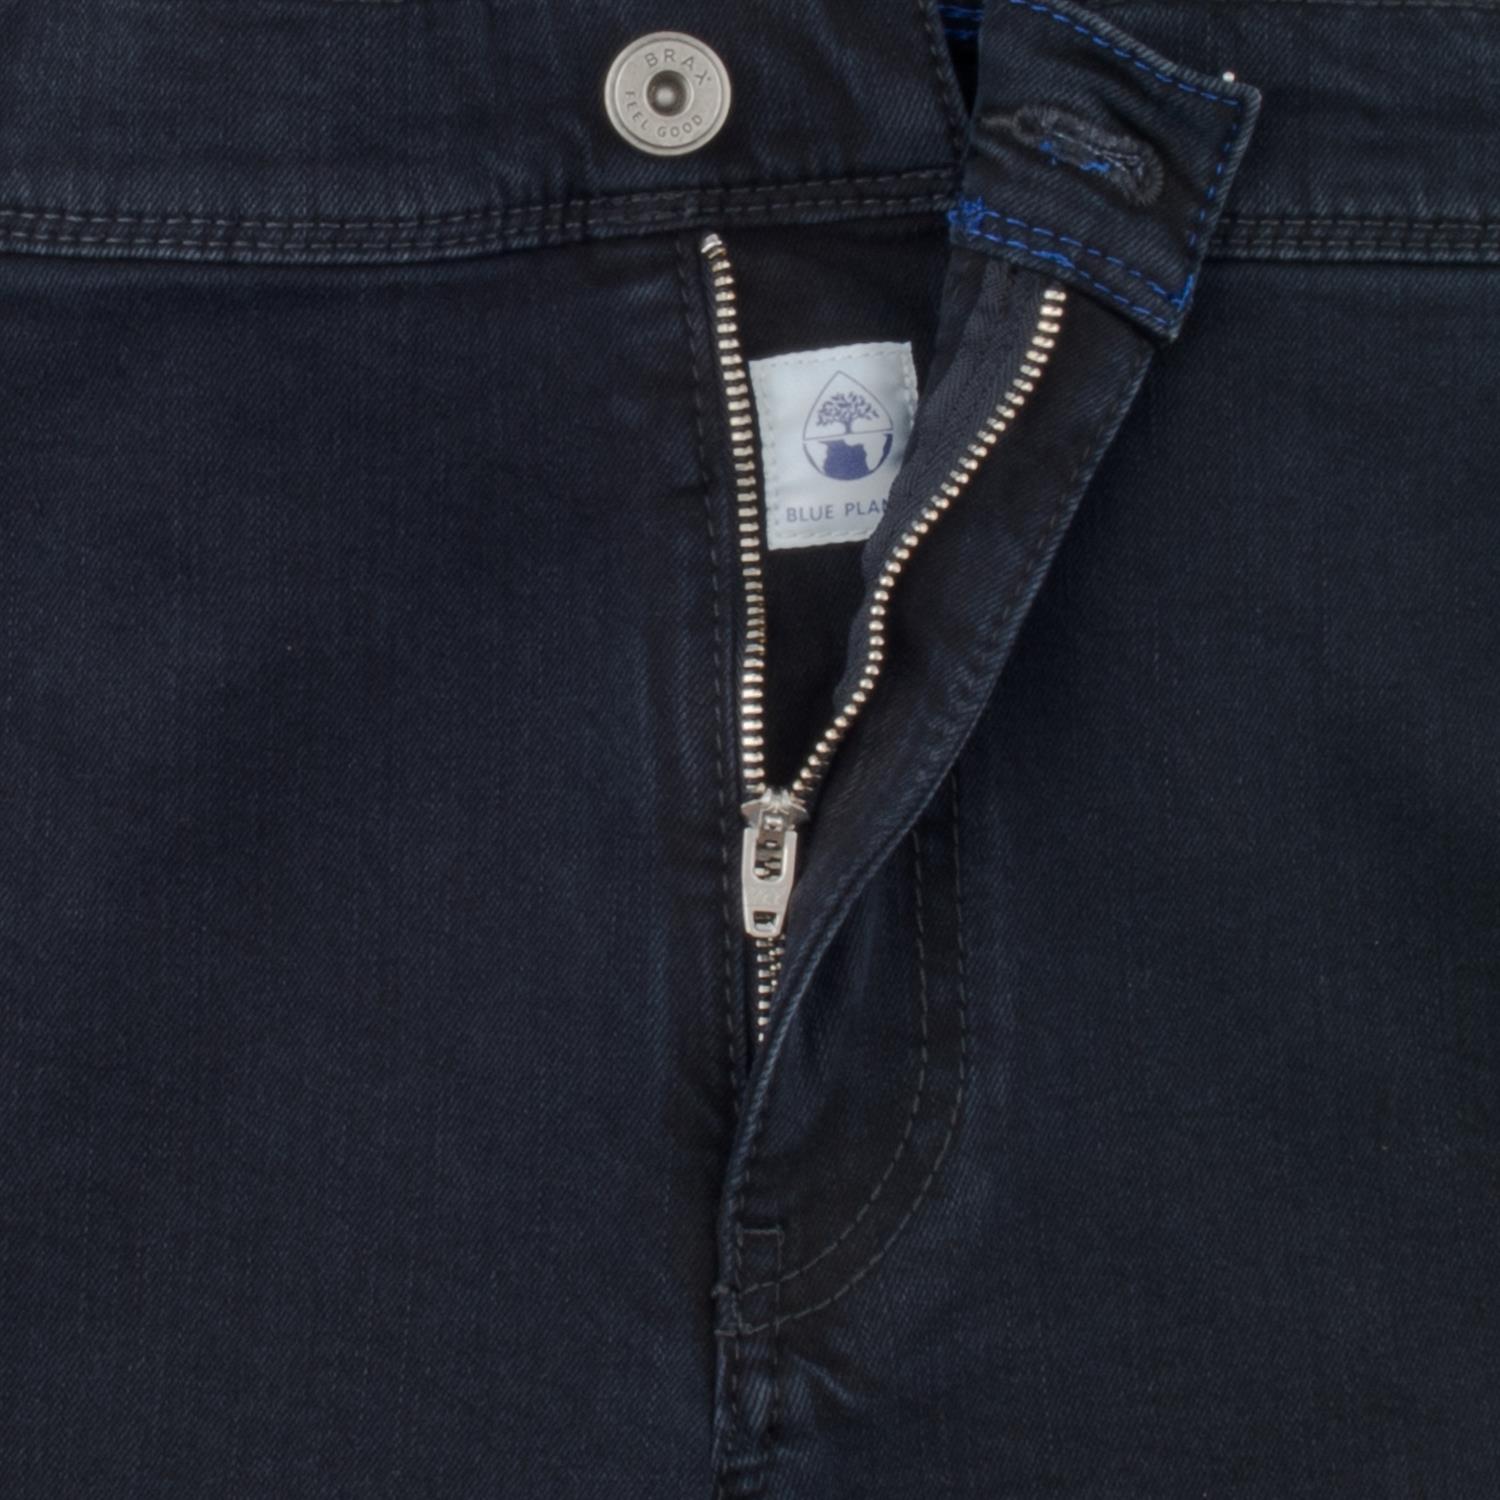 BRAX Jeans in Herrenmode kaufen Übergrößen dunkelblau